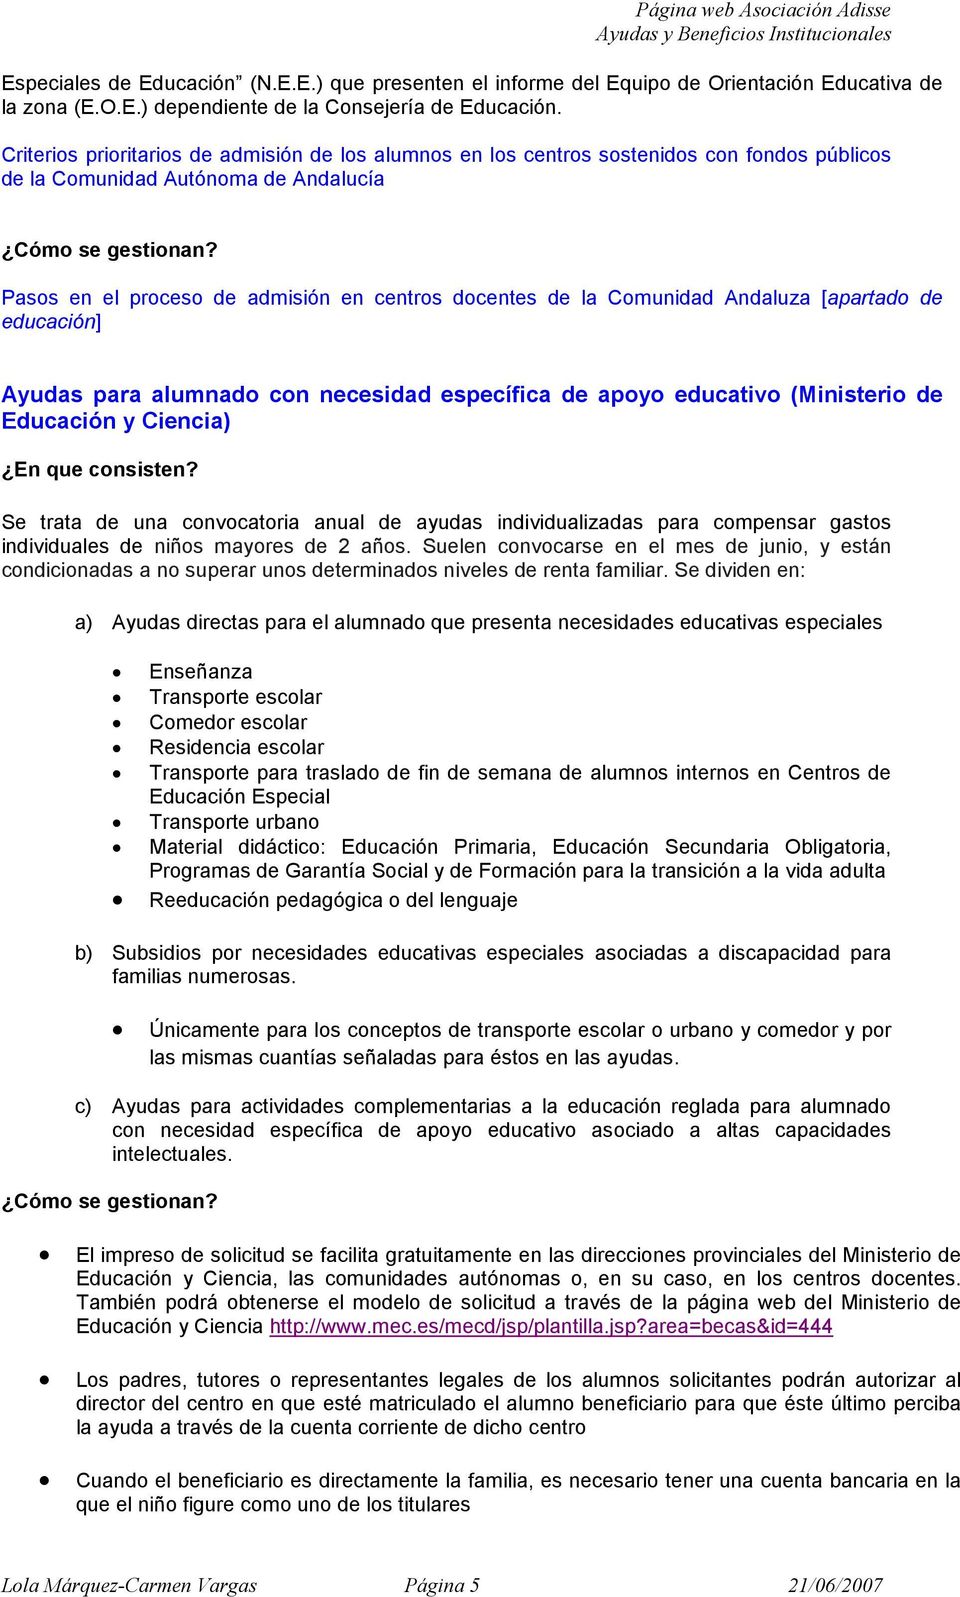 Pass en el prces de admisión en centrs dcentes de la Cmunidad Andaluza [apartad de educación] Ayudas para alumnad cn necesidad específica de apy educativ (Ministeri de Educación y Ciencia) En que